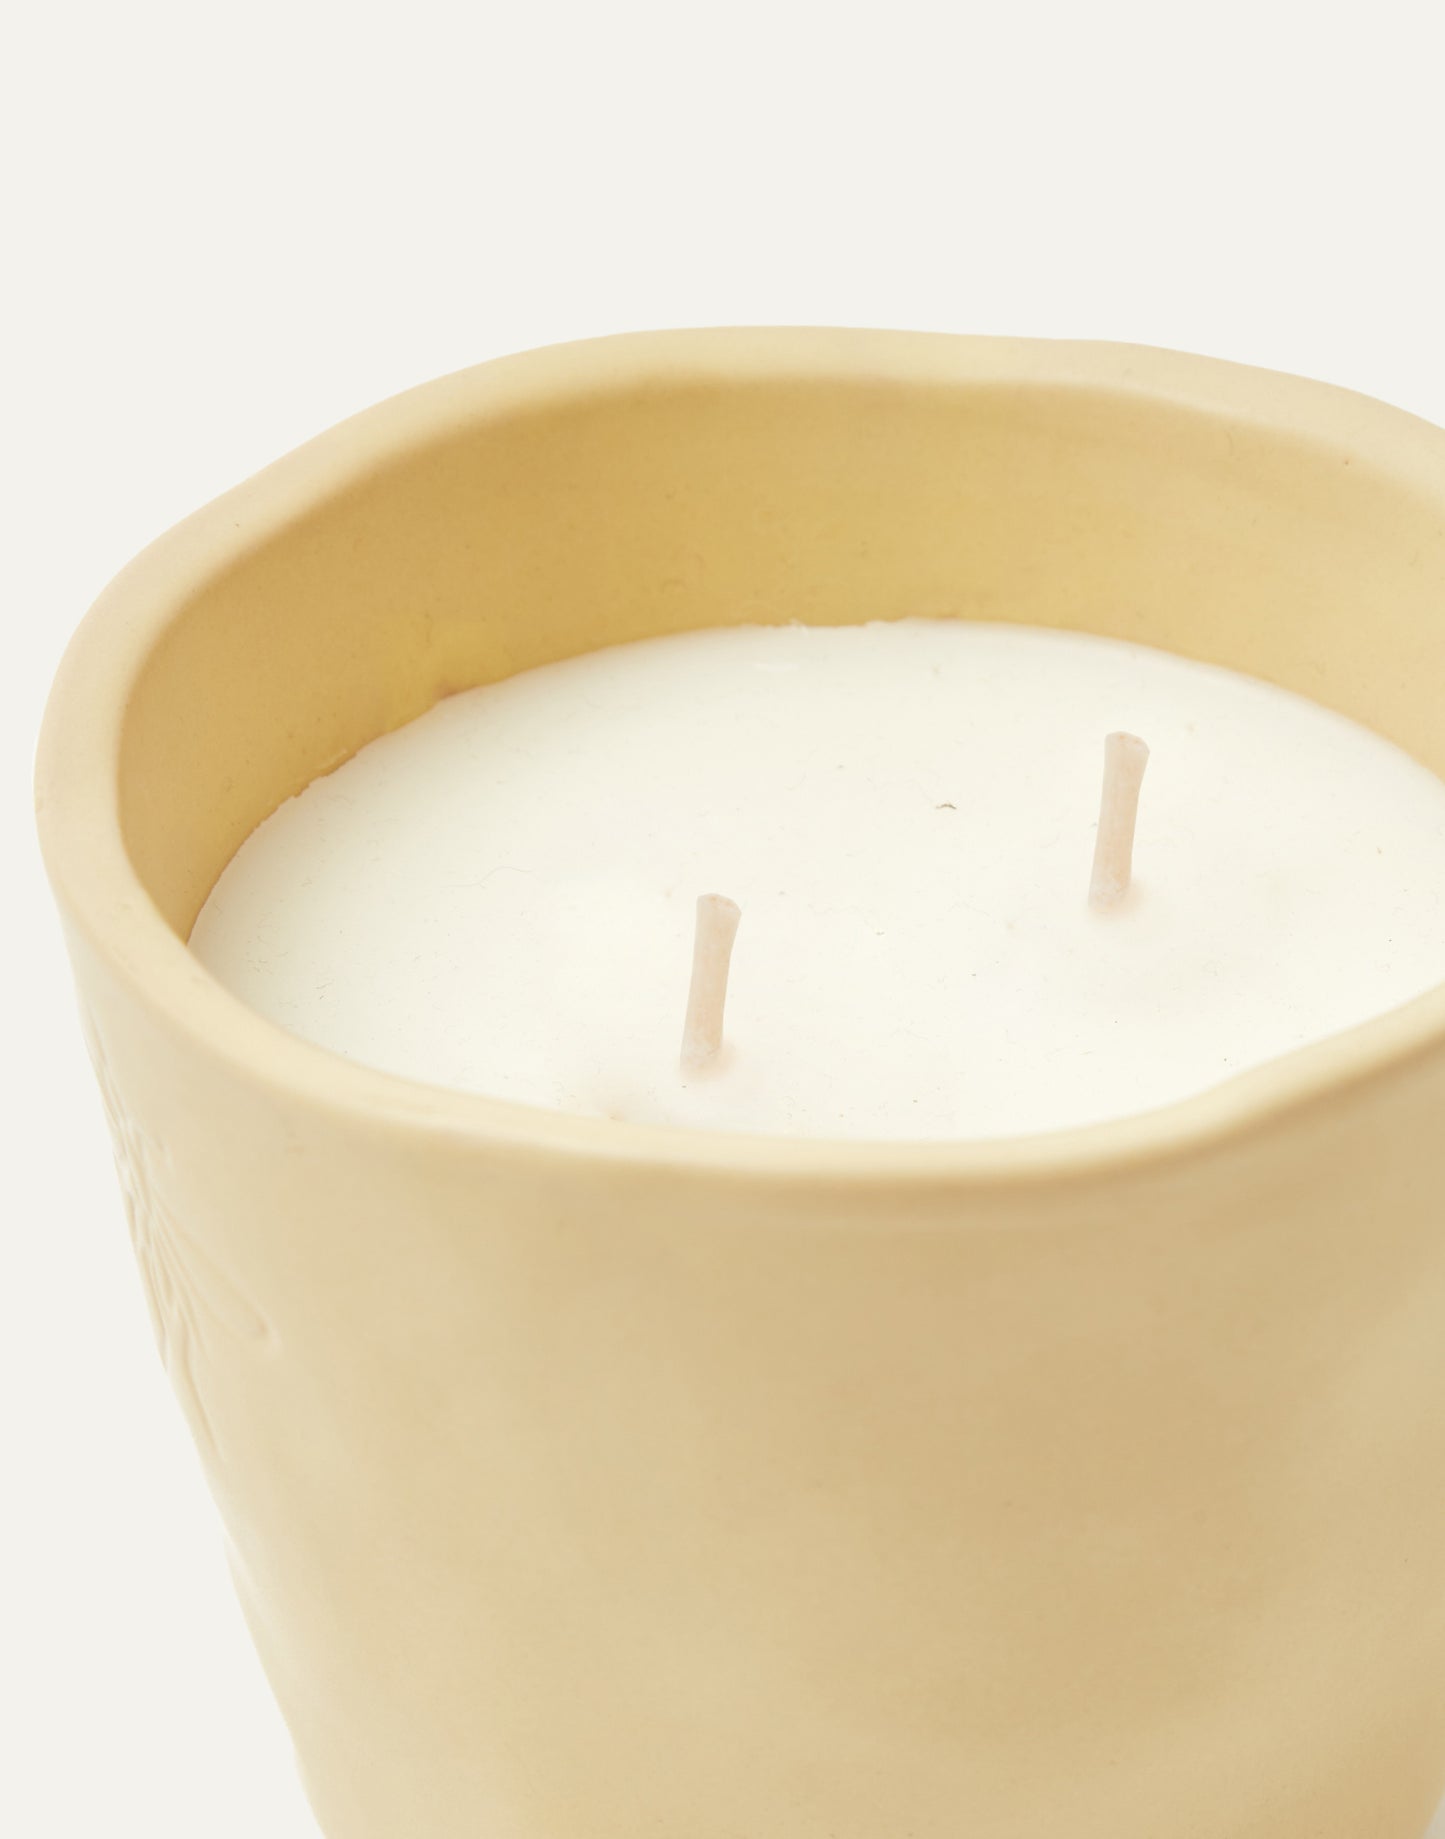 Citronella candle in ceramic pot